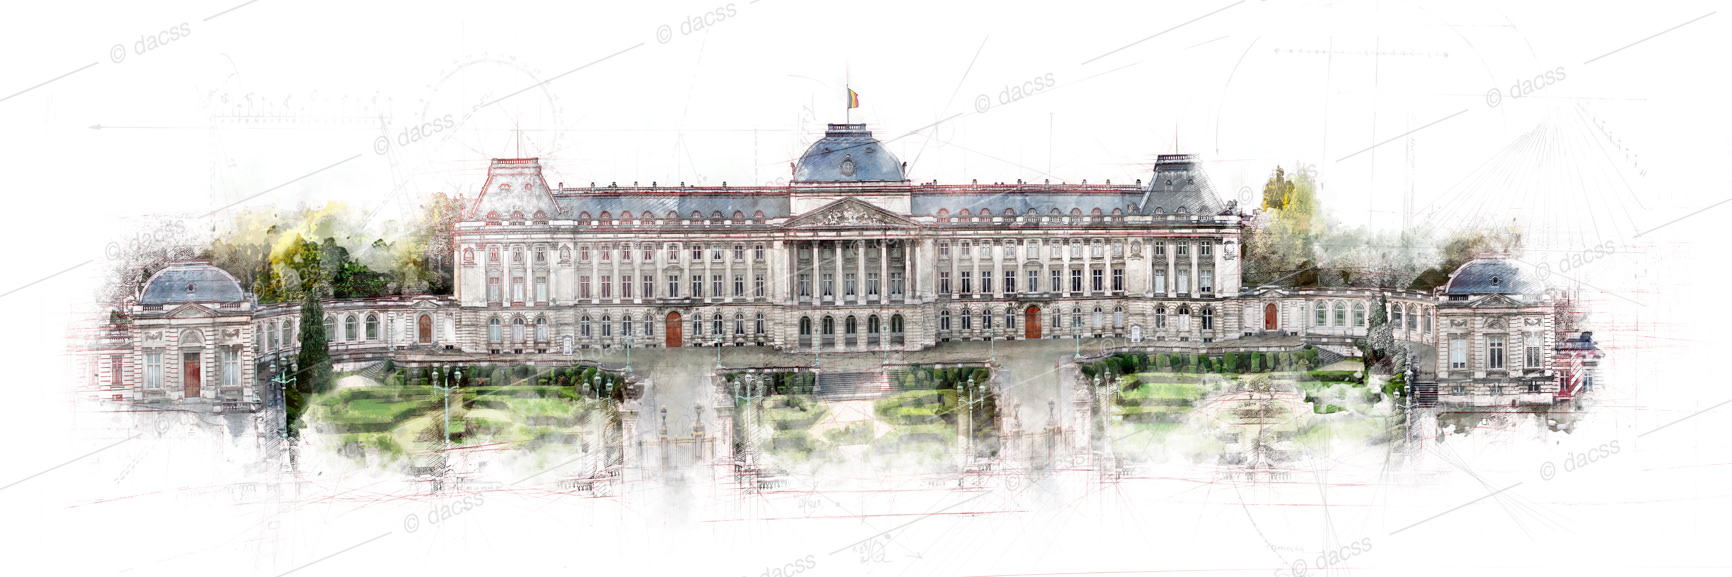 Palais Royal_02-WM.1Mpx